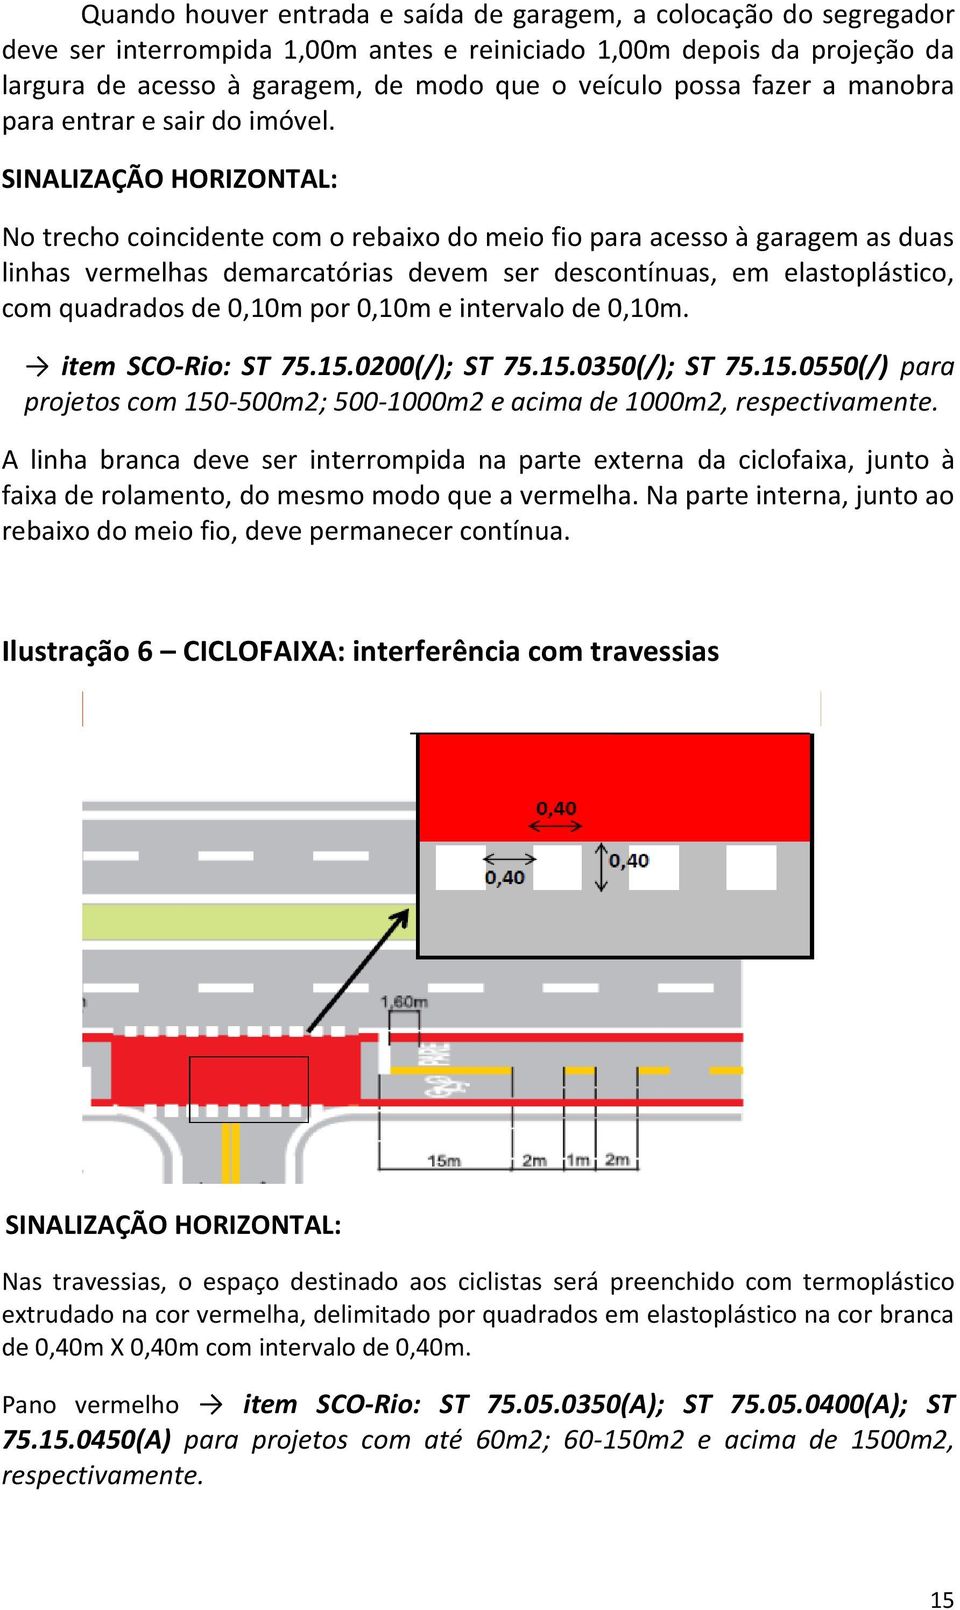 SINALIZAÇÃO HORIZONTAL: No trecho coincidente com o rebaixo do meio fio para acesso à garagem as duas linhas vermelhas demarcatórias devem ser descontínuas, em elastoplástico, com quadrados de 0,10m